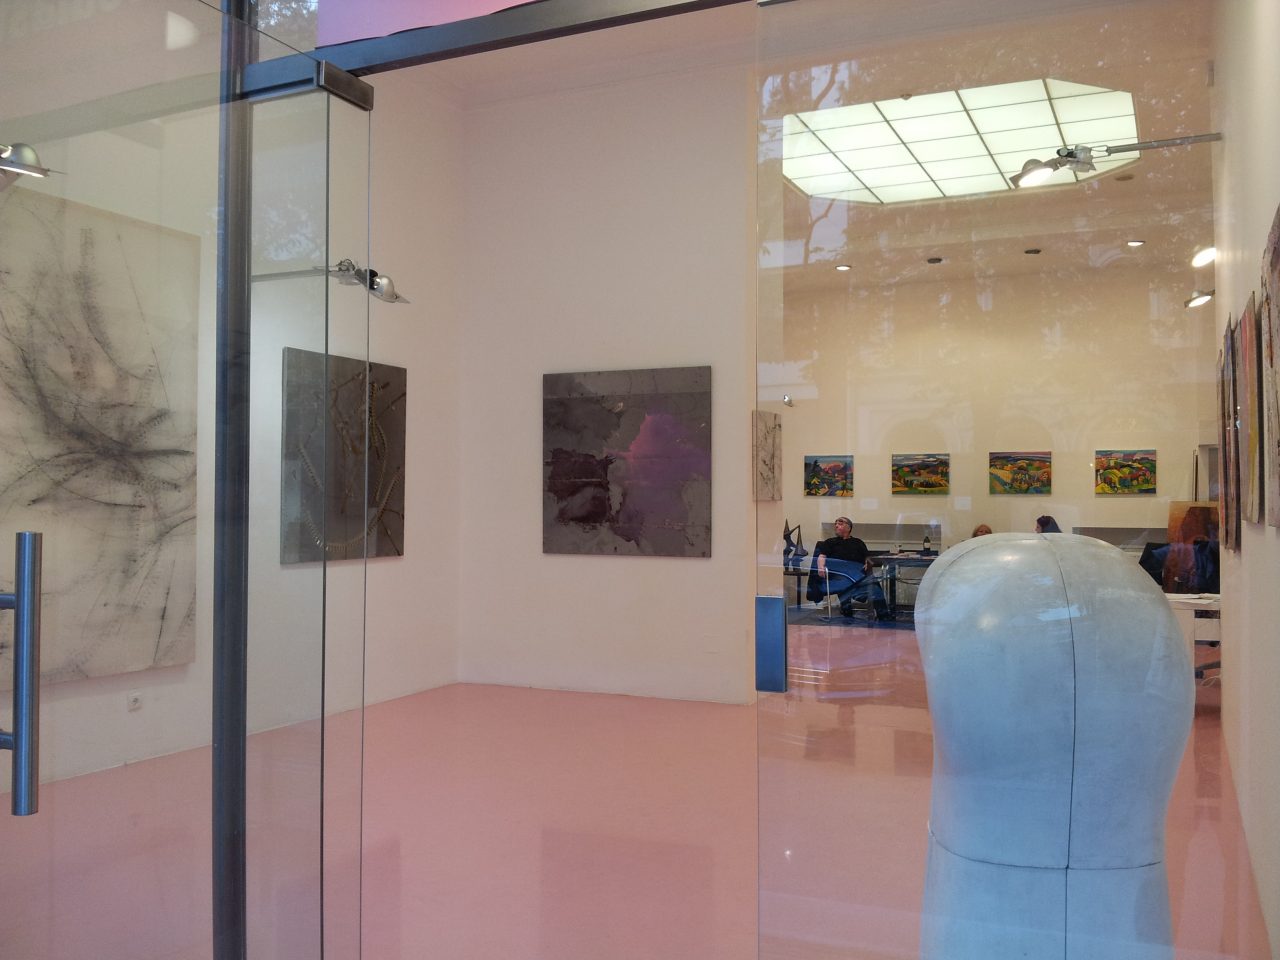 Laufende Ausstellung "Kontraste", Galerie Ursula Stross, Graz, zu besuchen bis 18.05.18